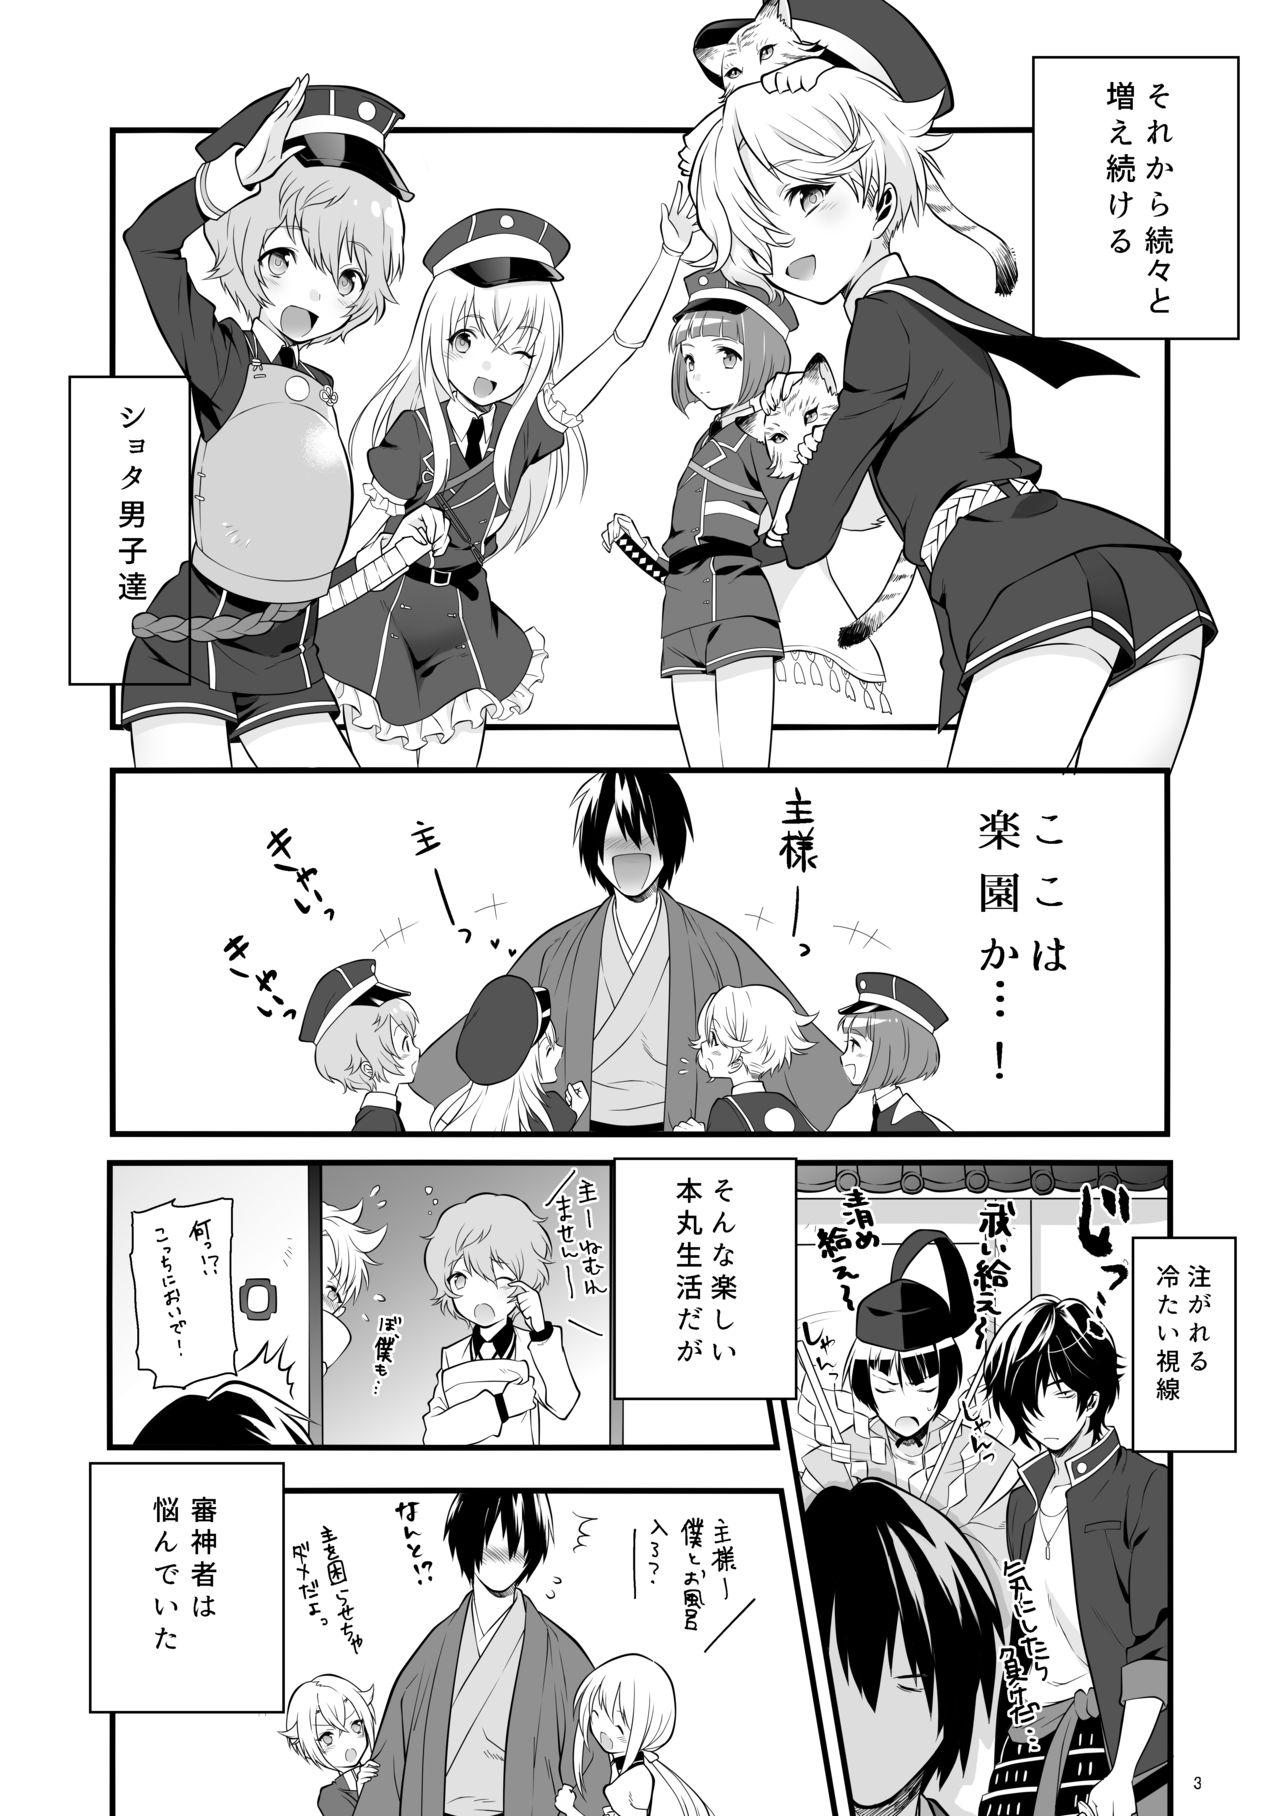 Blowjob Hajimete no Hotarumaru - Touken ranbu Pinay - Page 6